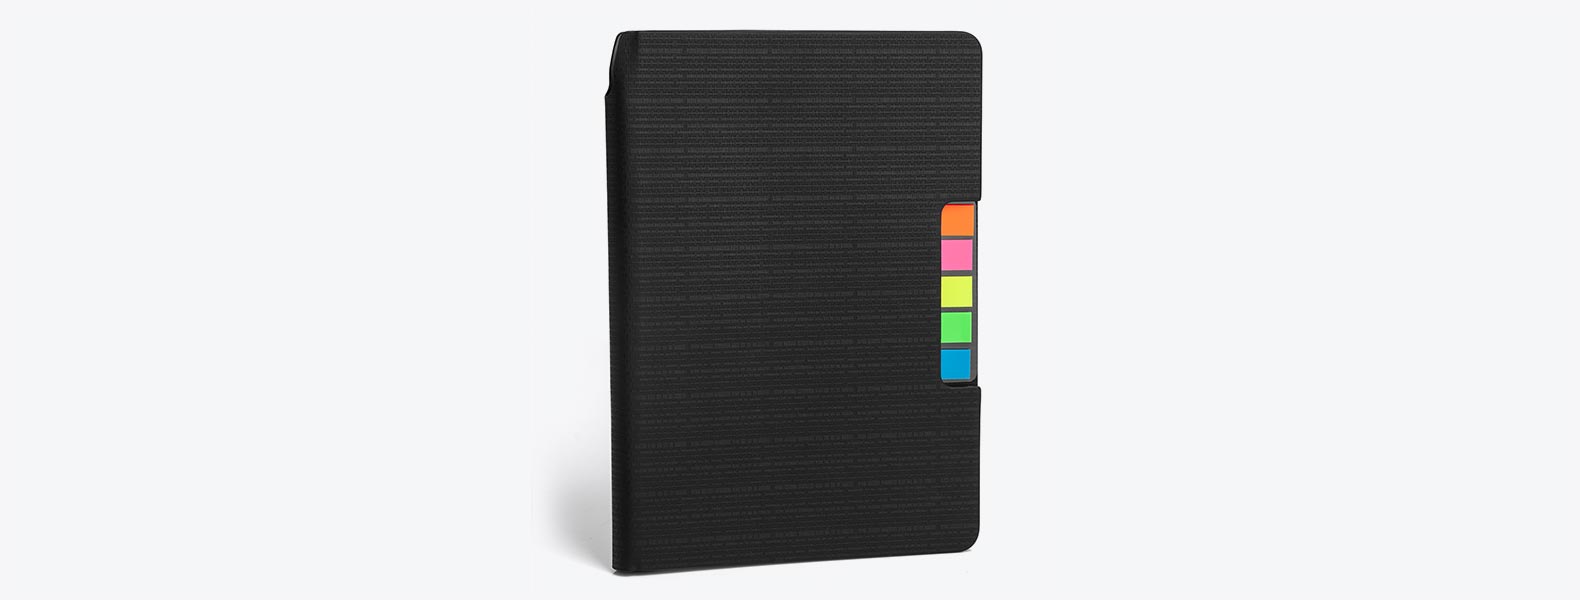 Caderno para anotações preto com capa em Material Sintético. Conta com 80 folhas pautadas e 5 cores com 25 folhas autocolantes cada.